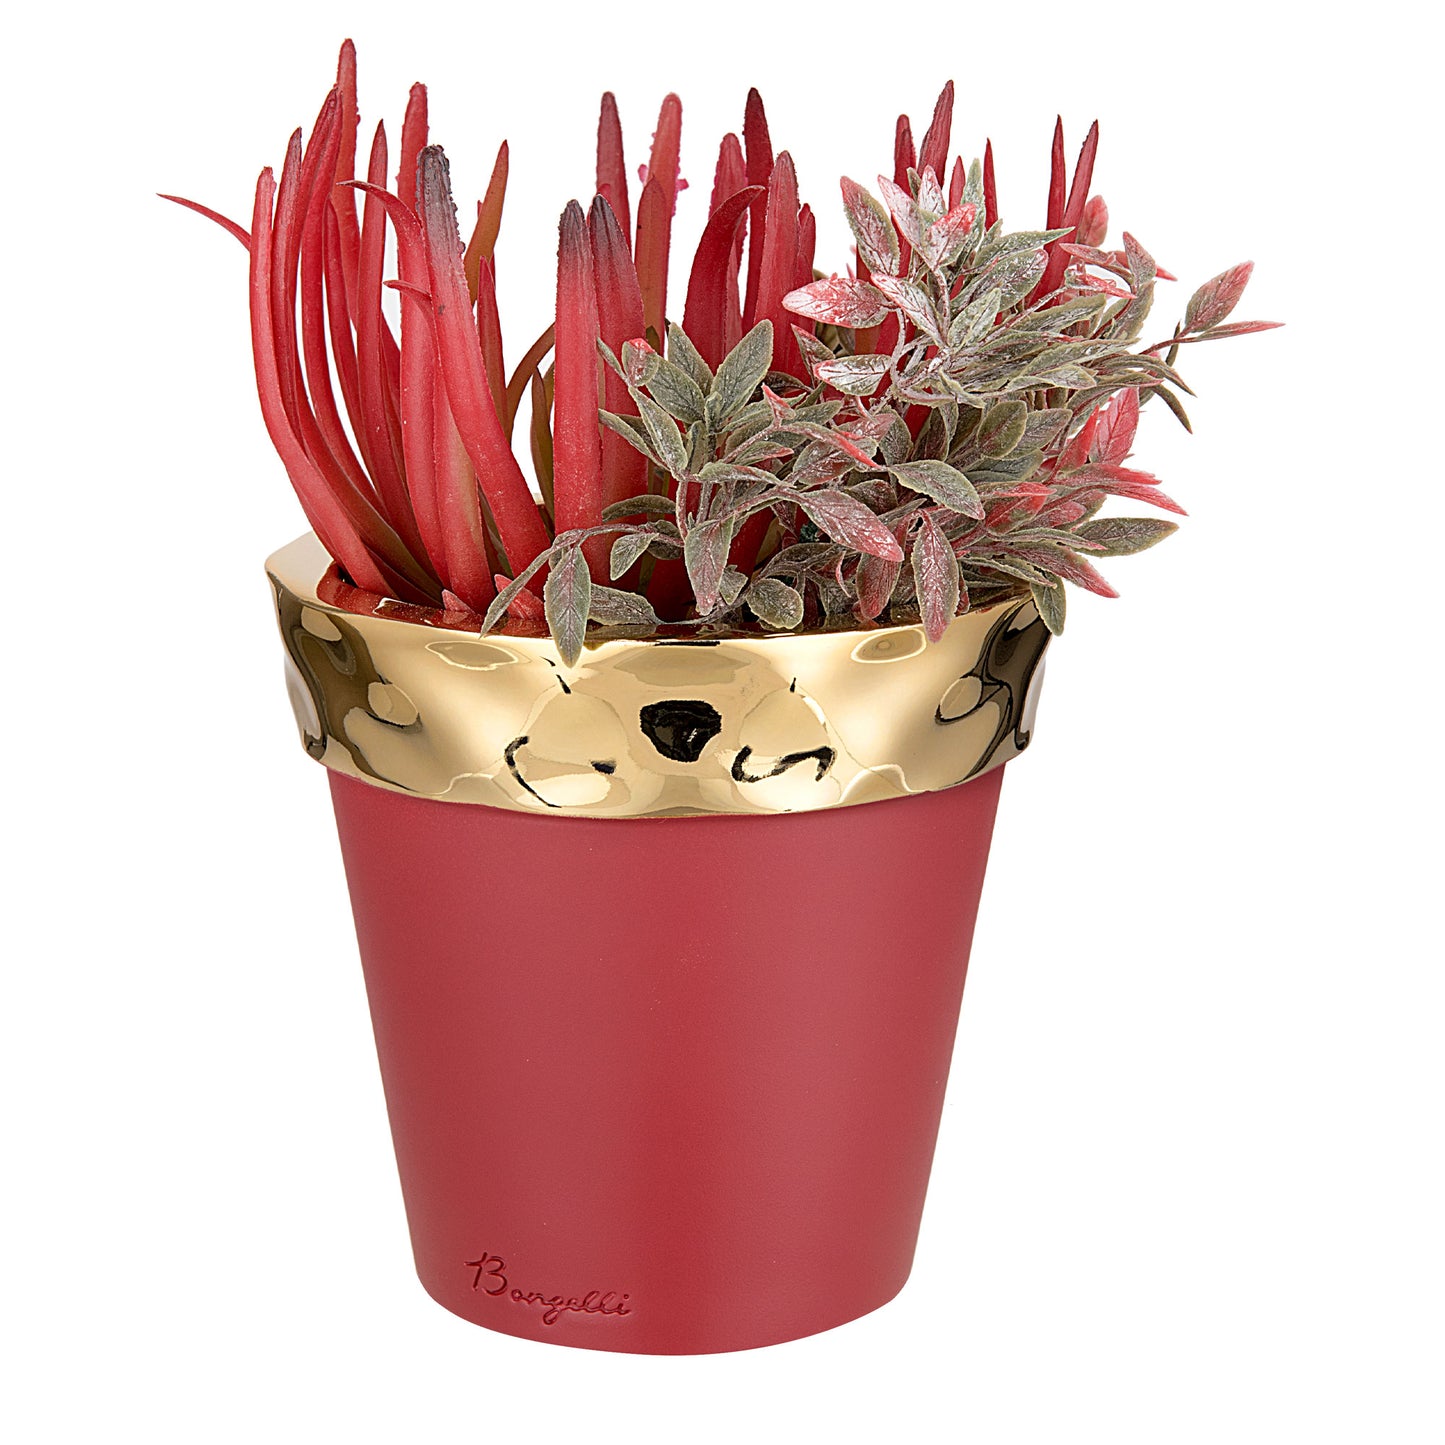 BONGELLI PREZIOSI Vaso Colorato in Marmorino Rosso e Oro 7,5cm Pianta Grassa Vera